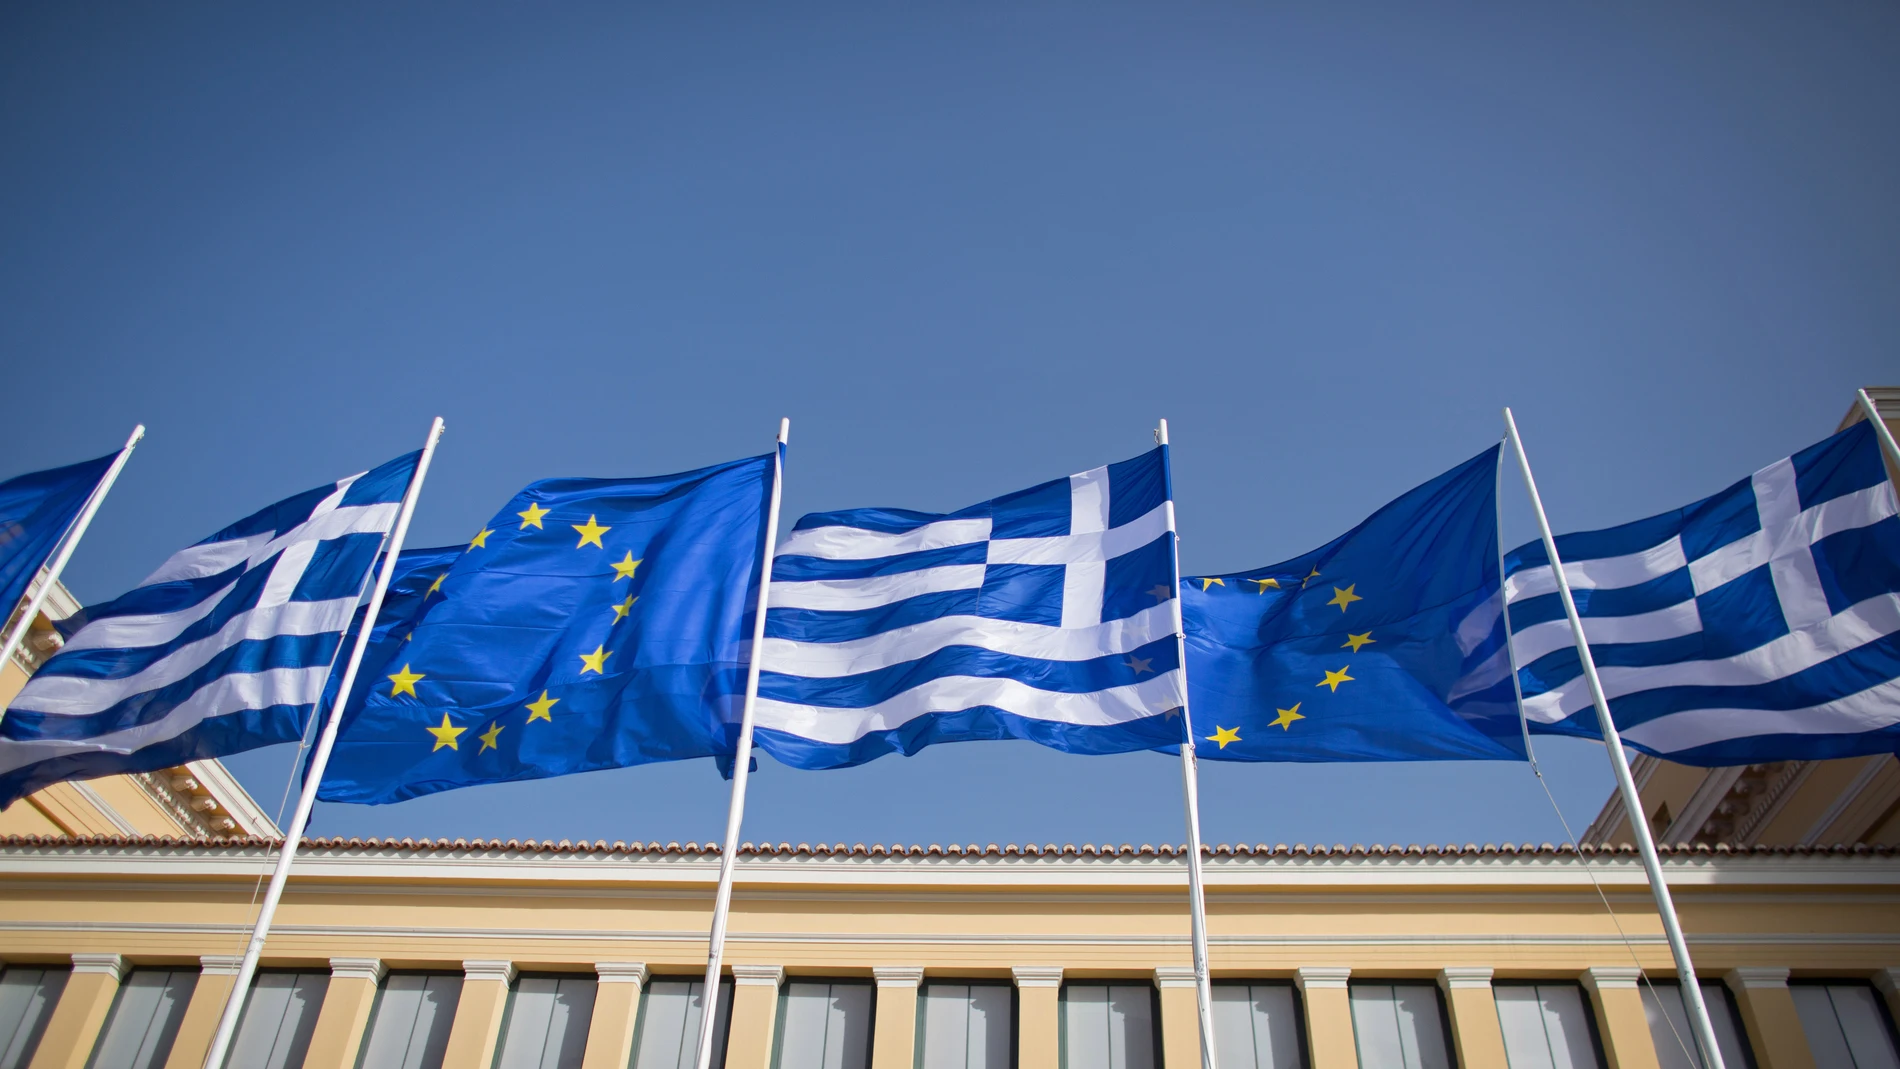 Banderas de Grecia y la Unión Europea